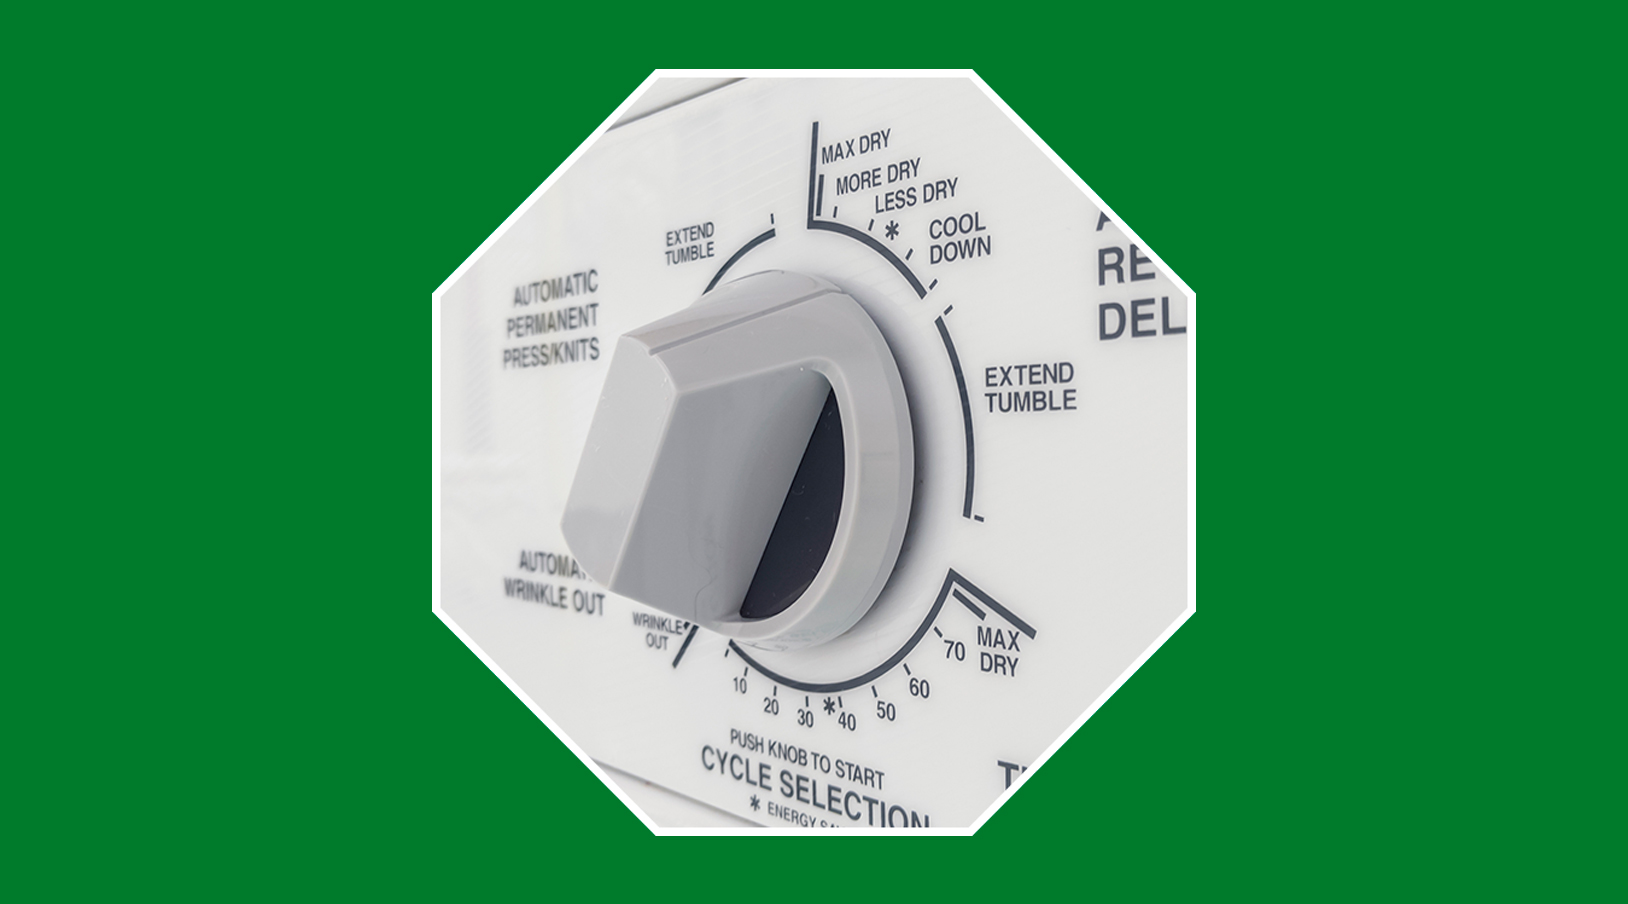 ¿Merece la pena una secadora?: consumo, tipos y consejos | Blog EnergyGO